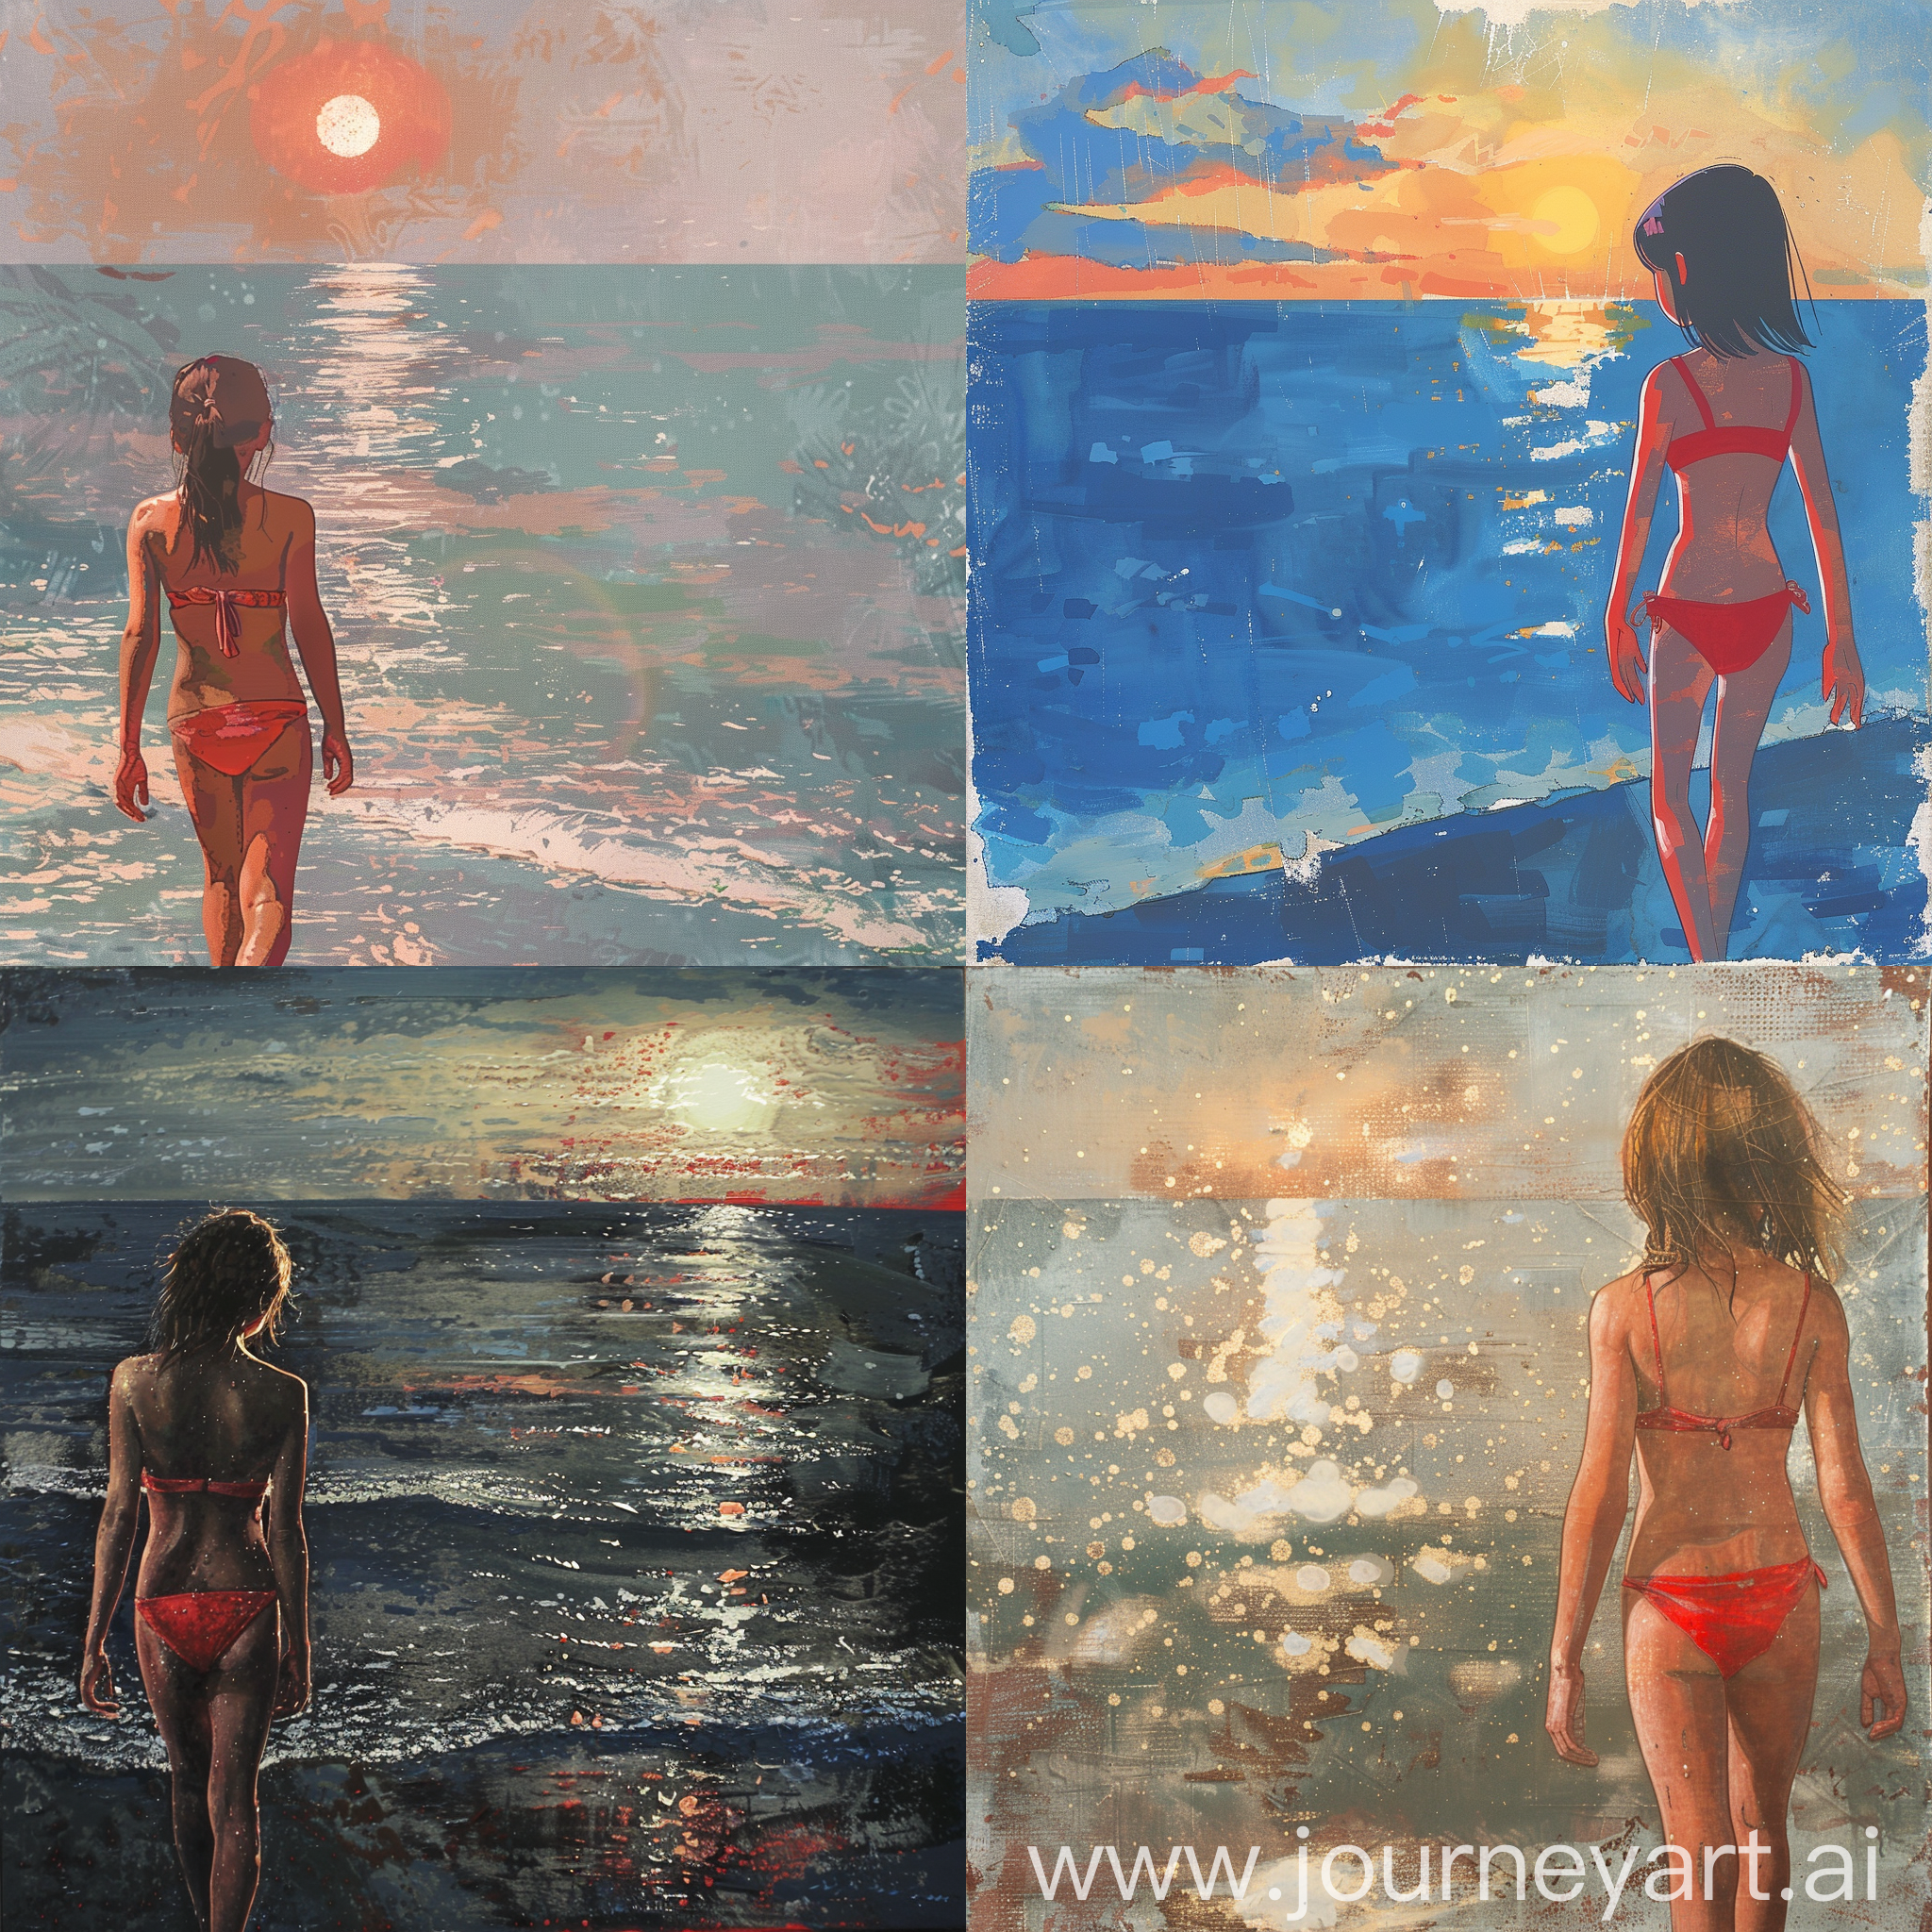 一个夏天的傍晚，一个穿着红色比基尼的年轻女孩子正在海边散步，这时落日的余辉洒满了整个海面